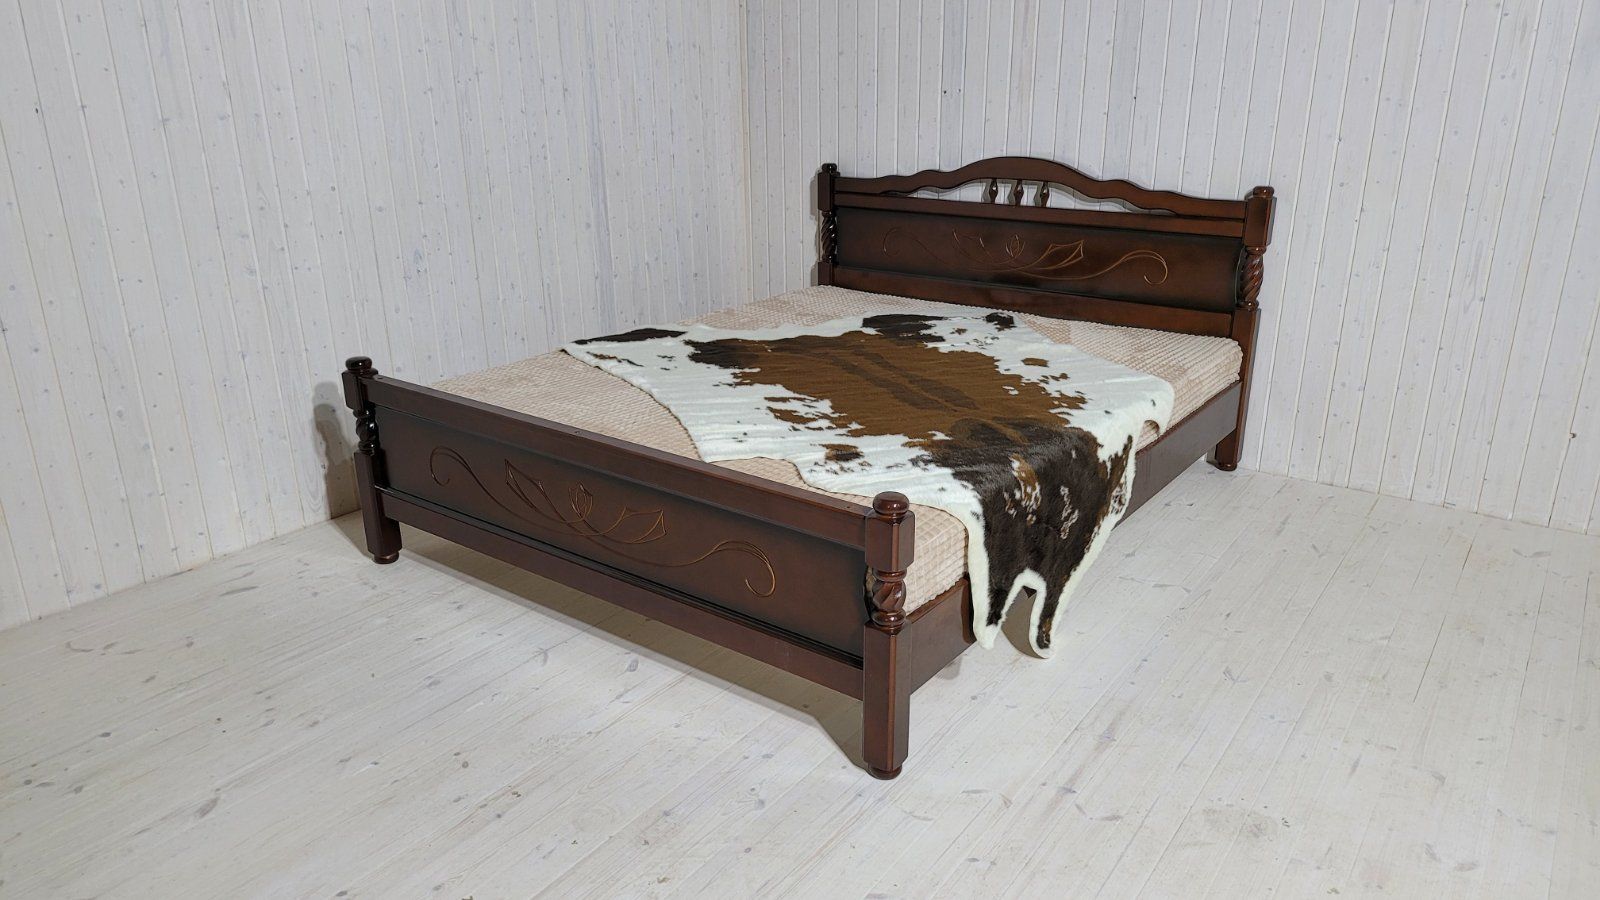 Кровать Карина-5